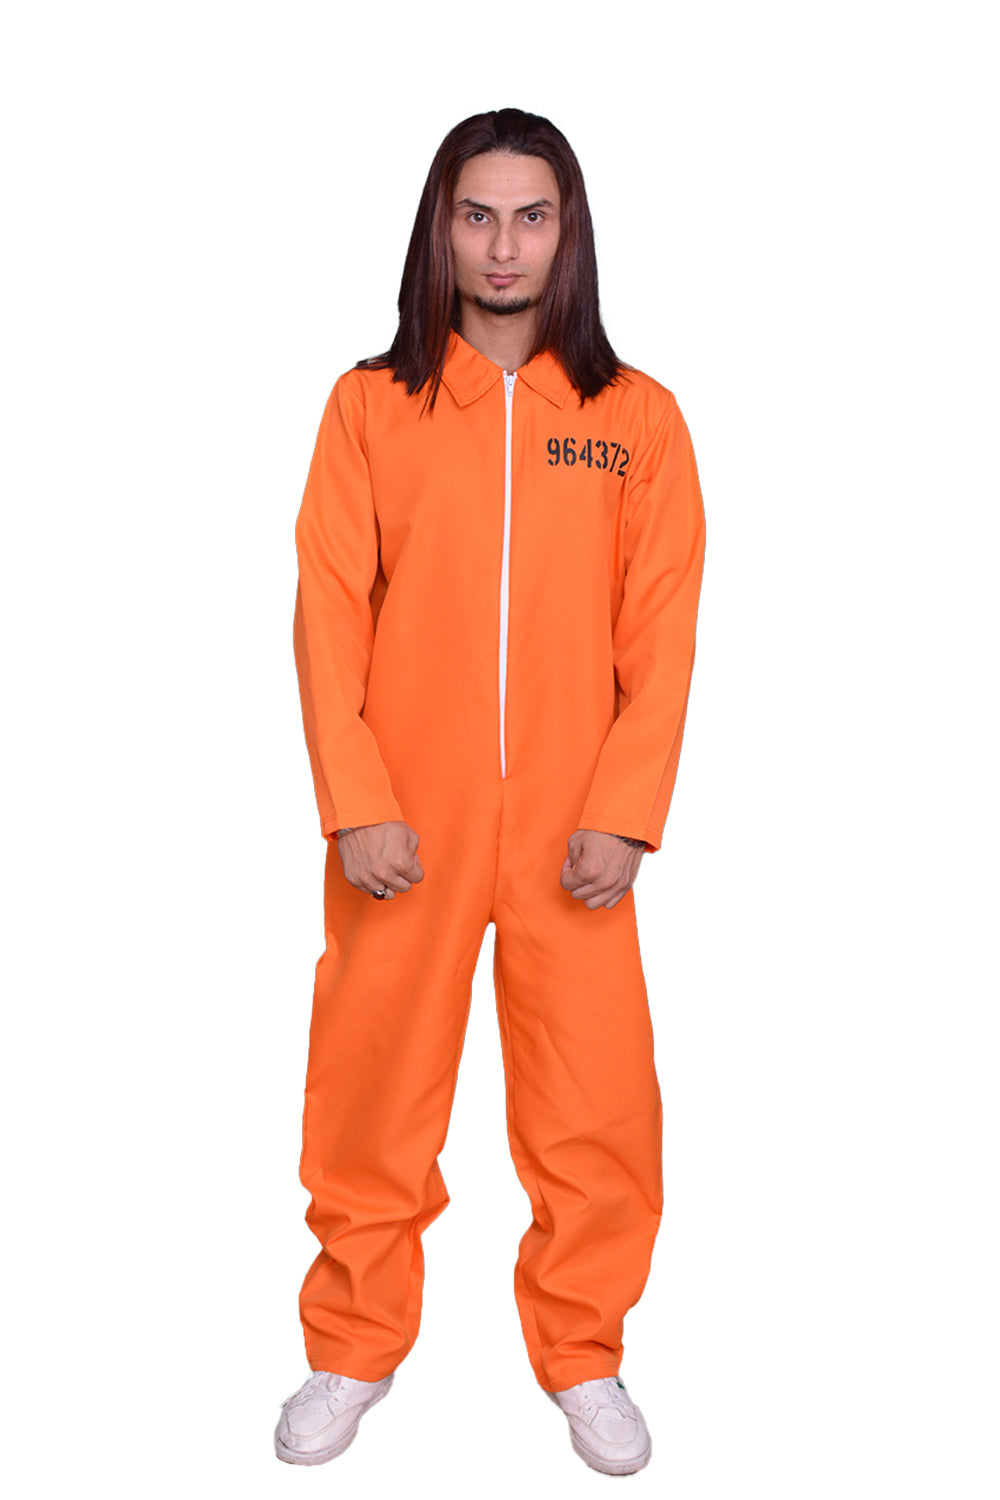 Men's Orange Prisoner Costume Overall Jumpsuit